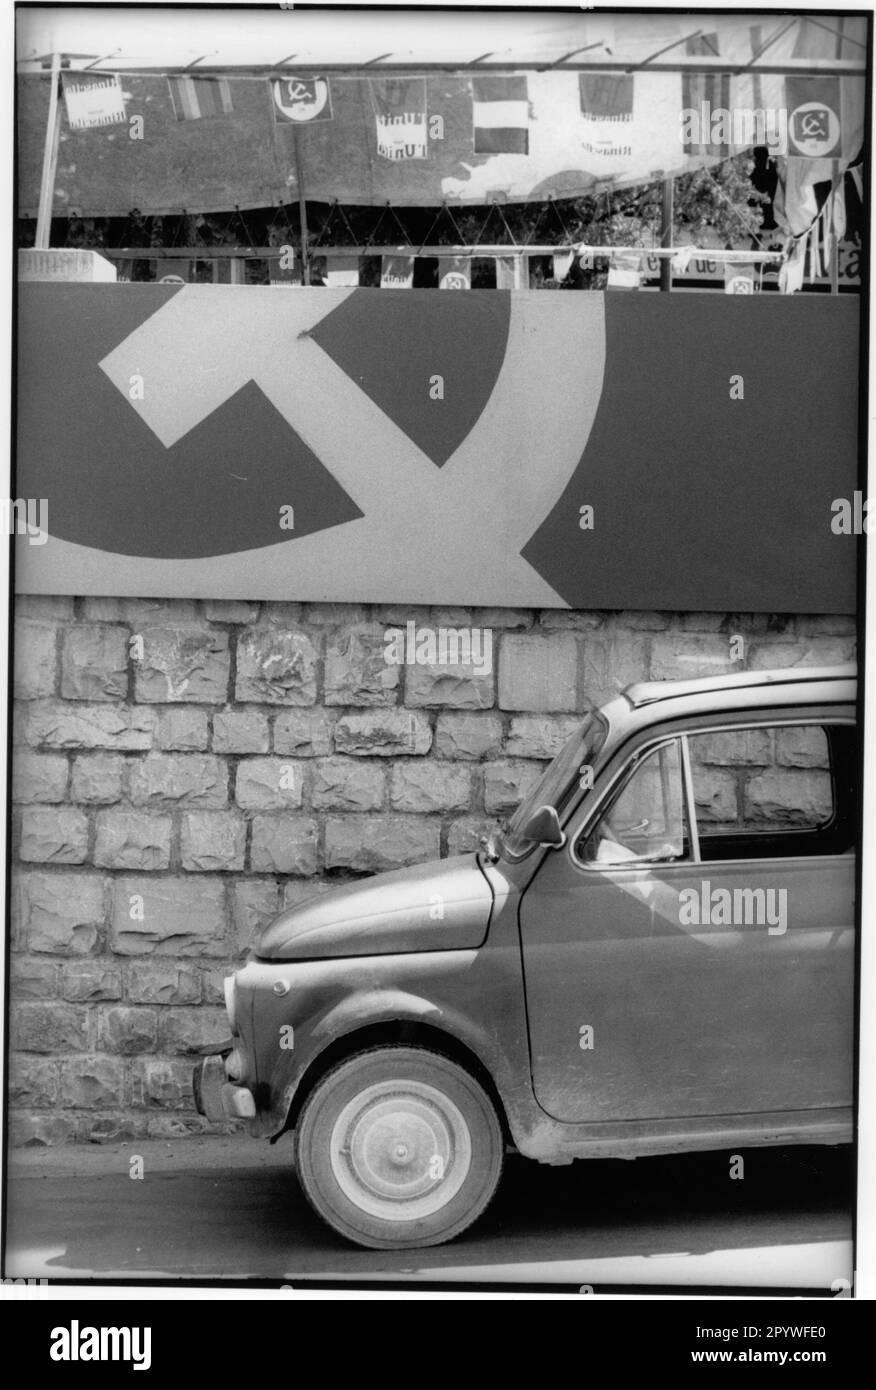 ' Toscane, Italie. Politique, élections. Élection des communistes et du journal communiste ''l'UNITA'': Décoration de drapeau avec marteau et faucille. Une Fiat 500 est garée devant le mur. Scène de rue, noir et blanc. Photo, 1988.' Banque D'Images